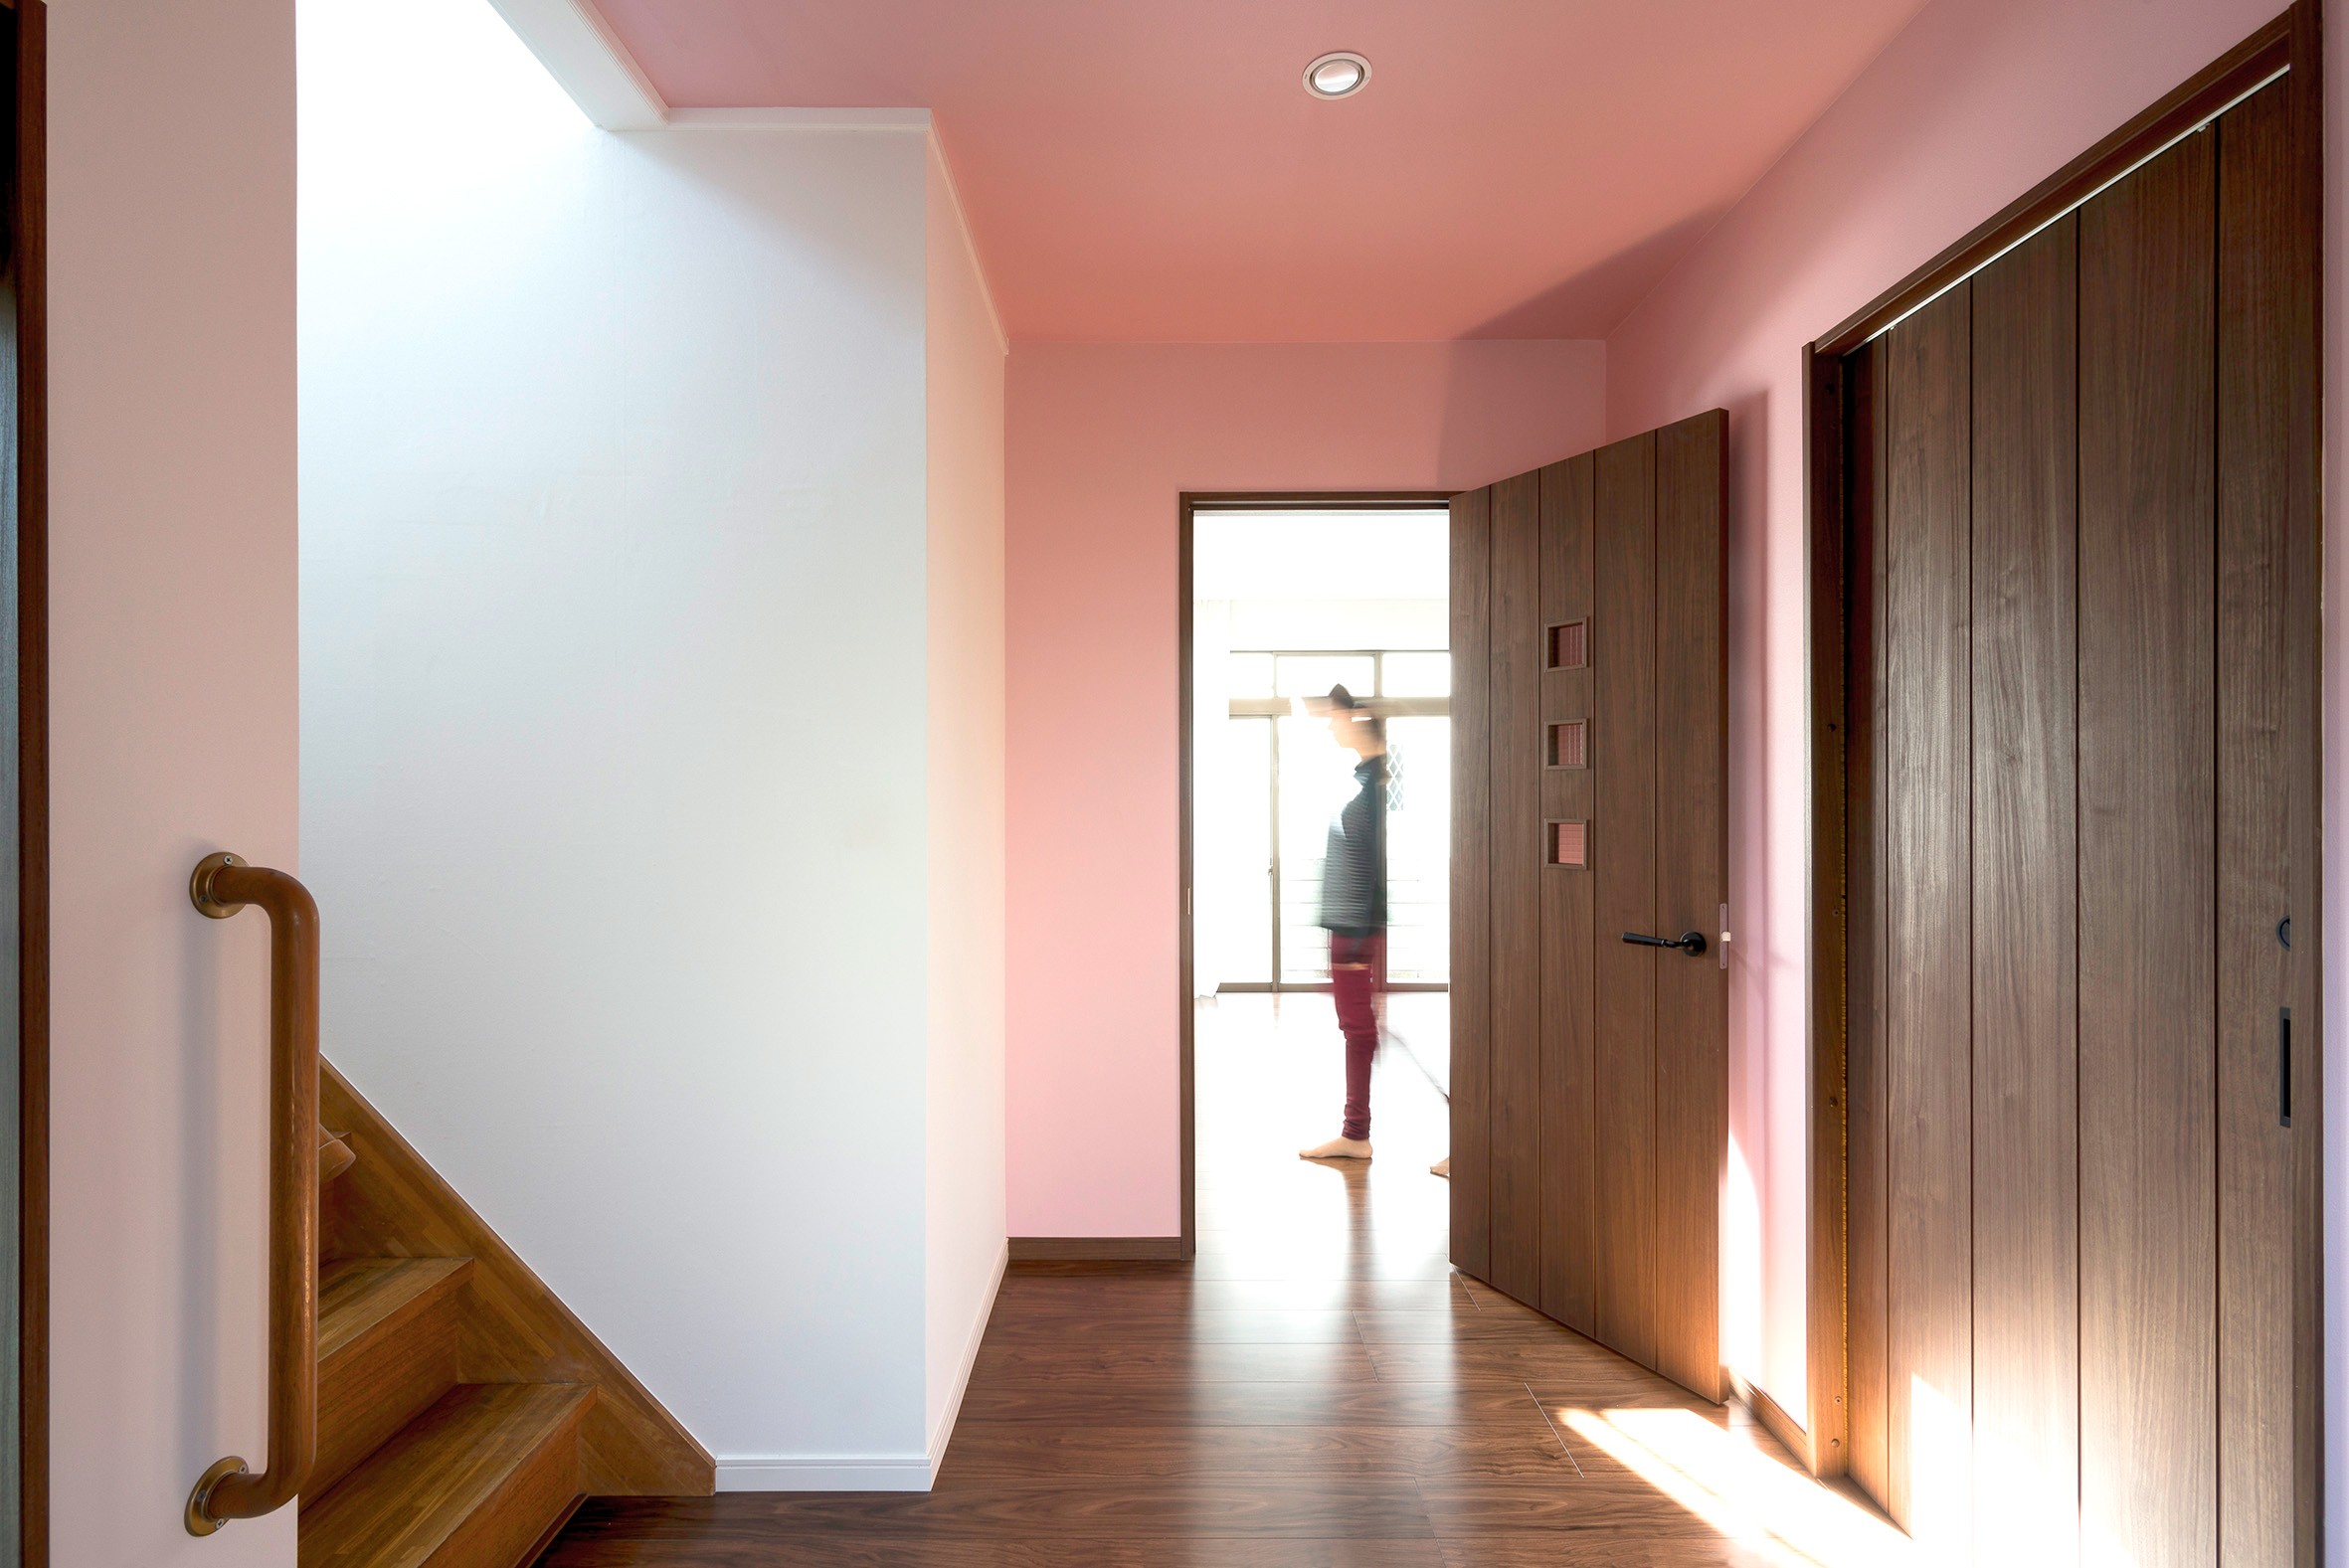 同一色の壁紙で天井と壁紙に一体感をつくる 戸建リノベーション事例 Suvaco スバコ